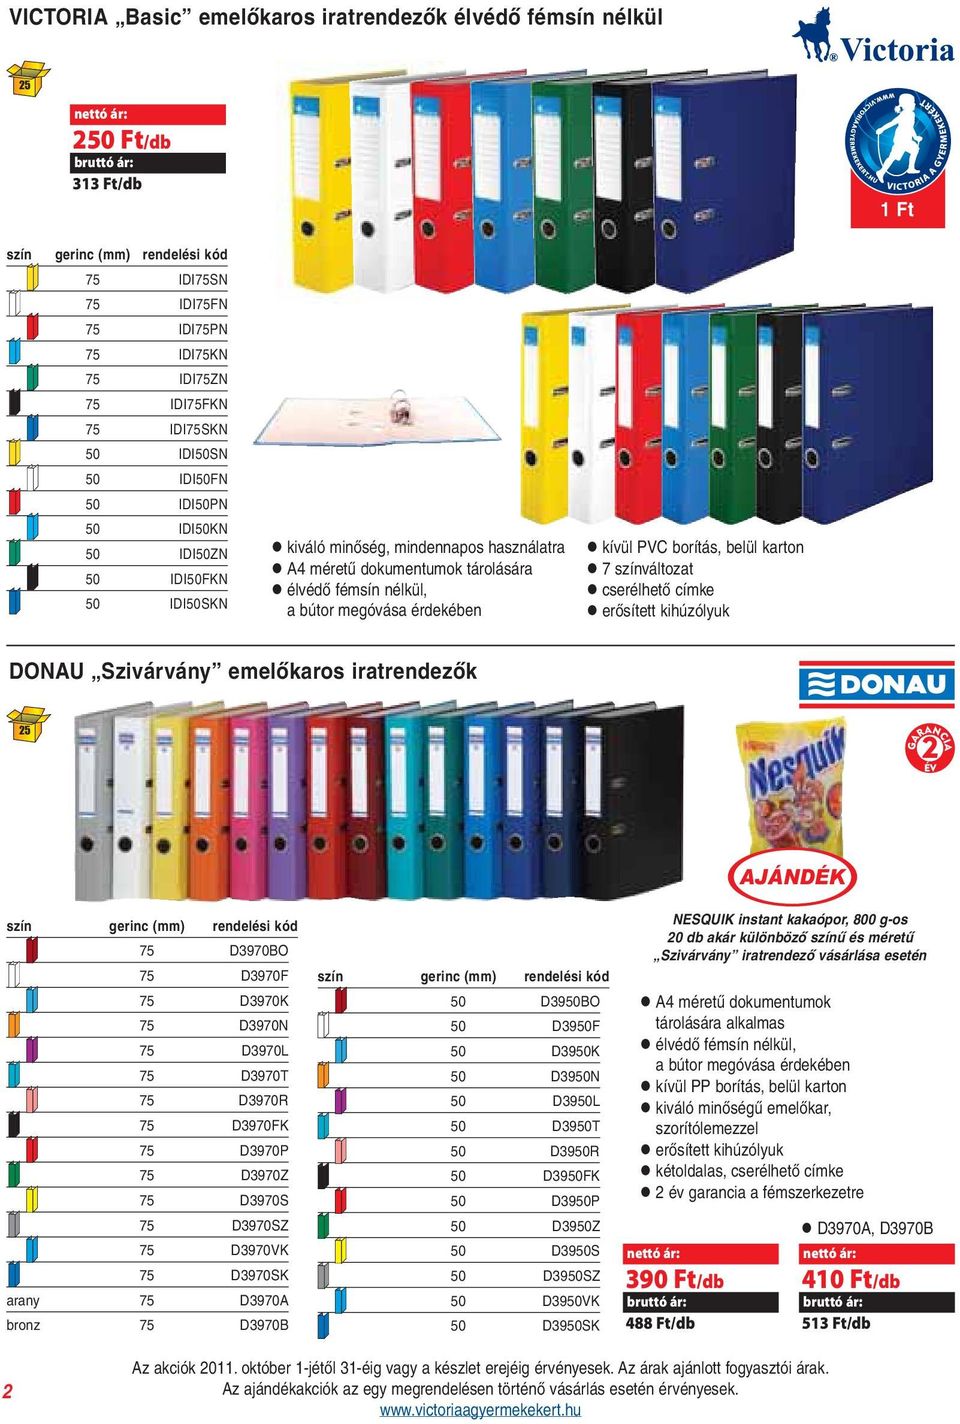 kívül PVC borítás, belül karton l 7 színváltozat l cserélhető címke l erősített kihúzólyuk DONAU Szivárvány emelőkaros iratrendezők 25 szín gerinc (mm) 75 D3970BO 75 D3970F 75 D3970K 75 D3970N 75